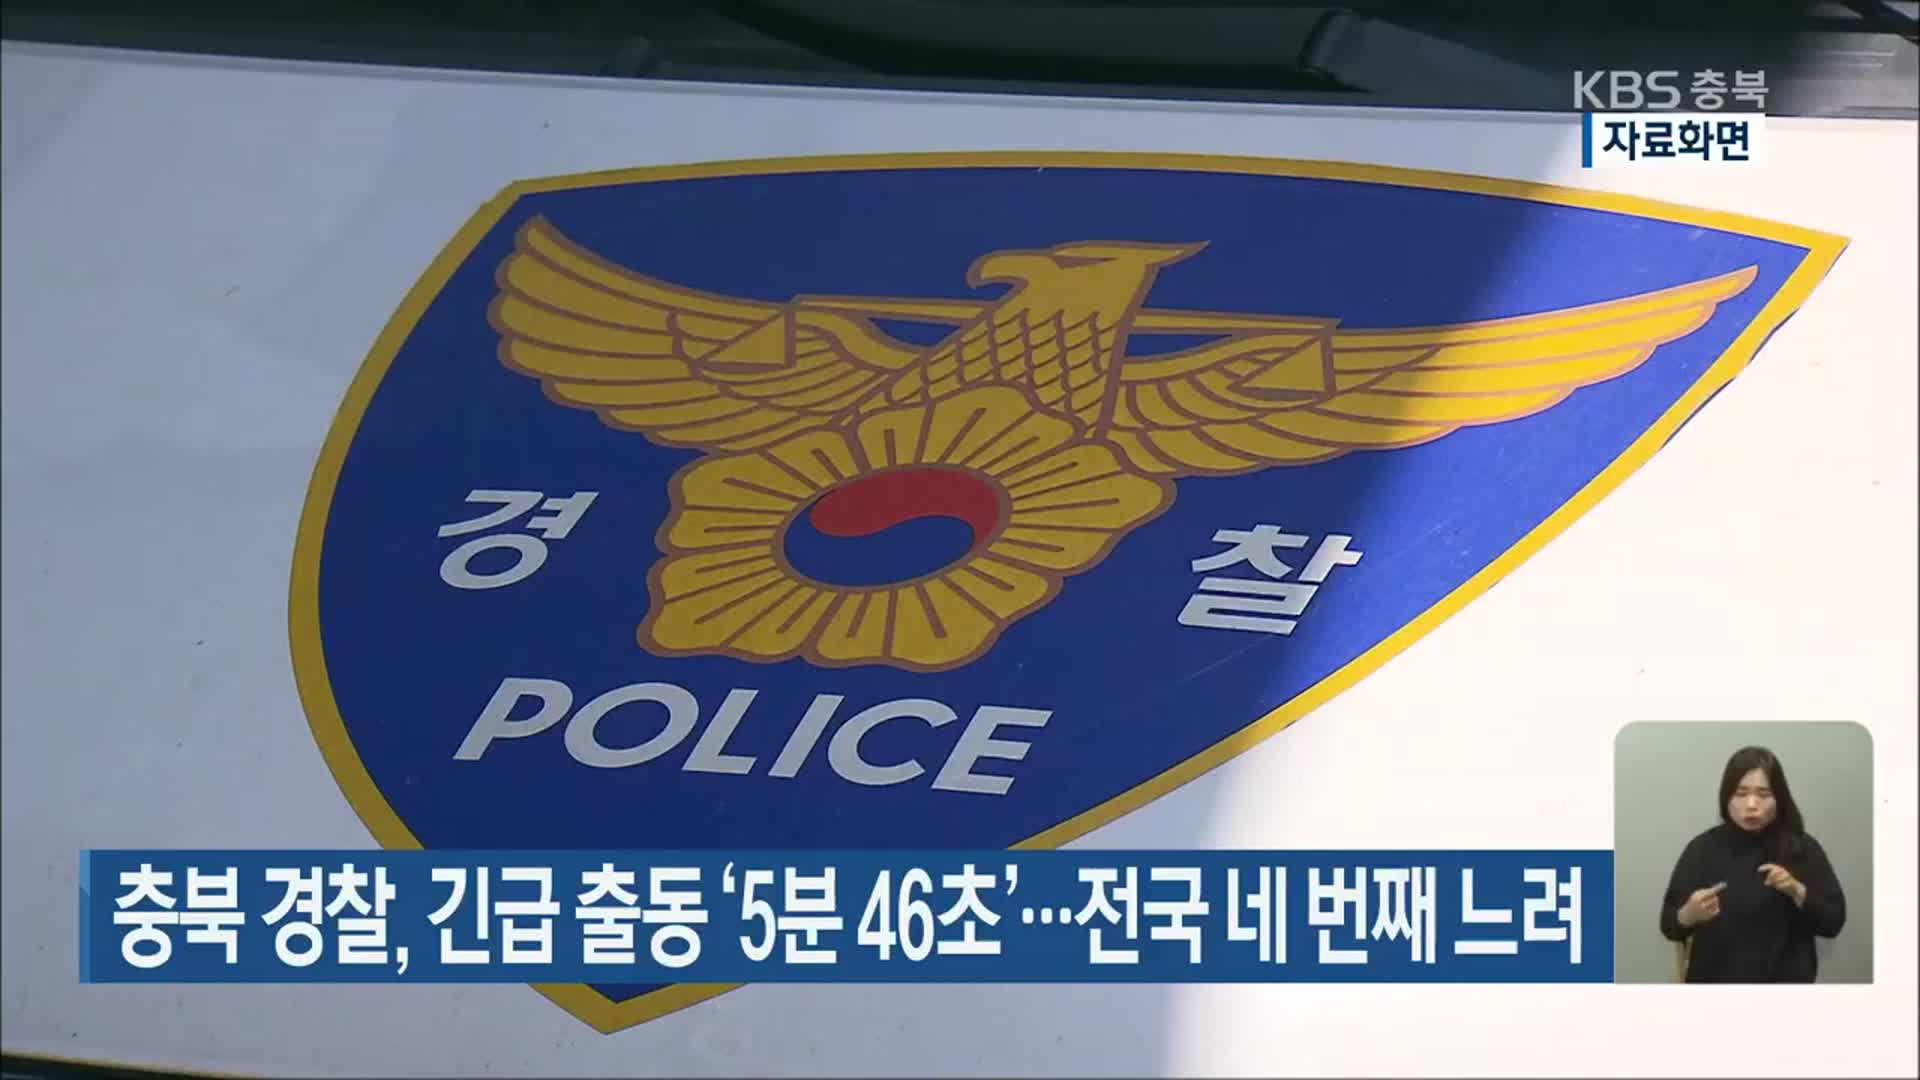 충북 경찰, 긴급 출동 ‘5분 46초’…전국 네 번째 느려